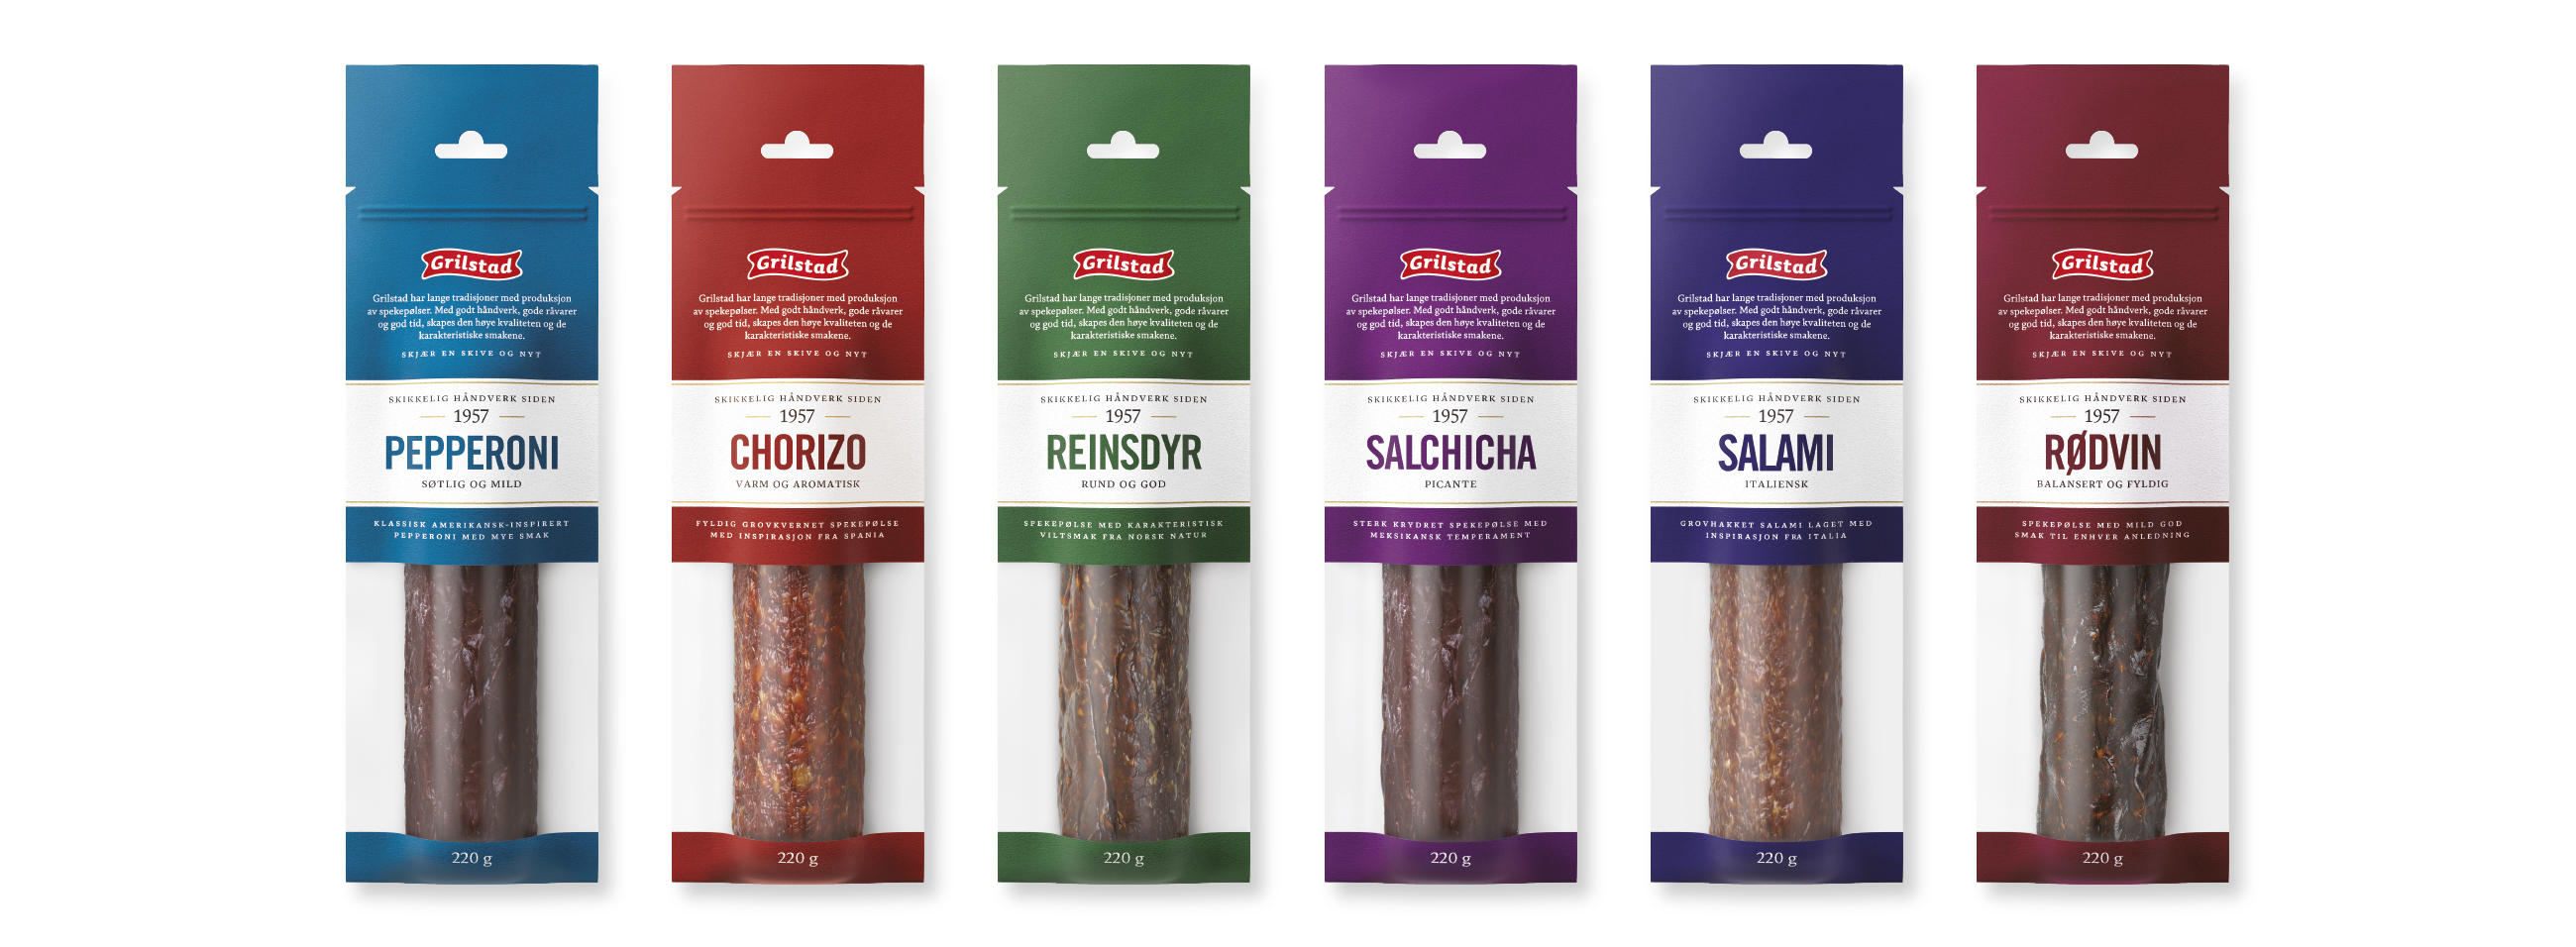 Grilstad Spekepølser emballasje cured sausages packaging design